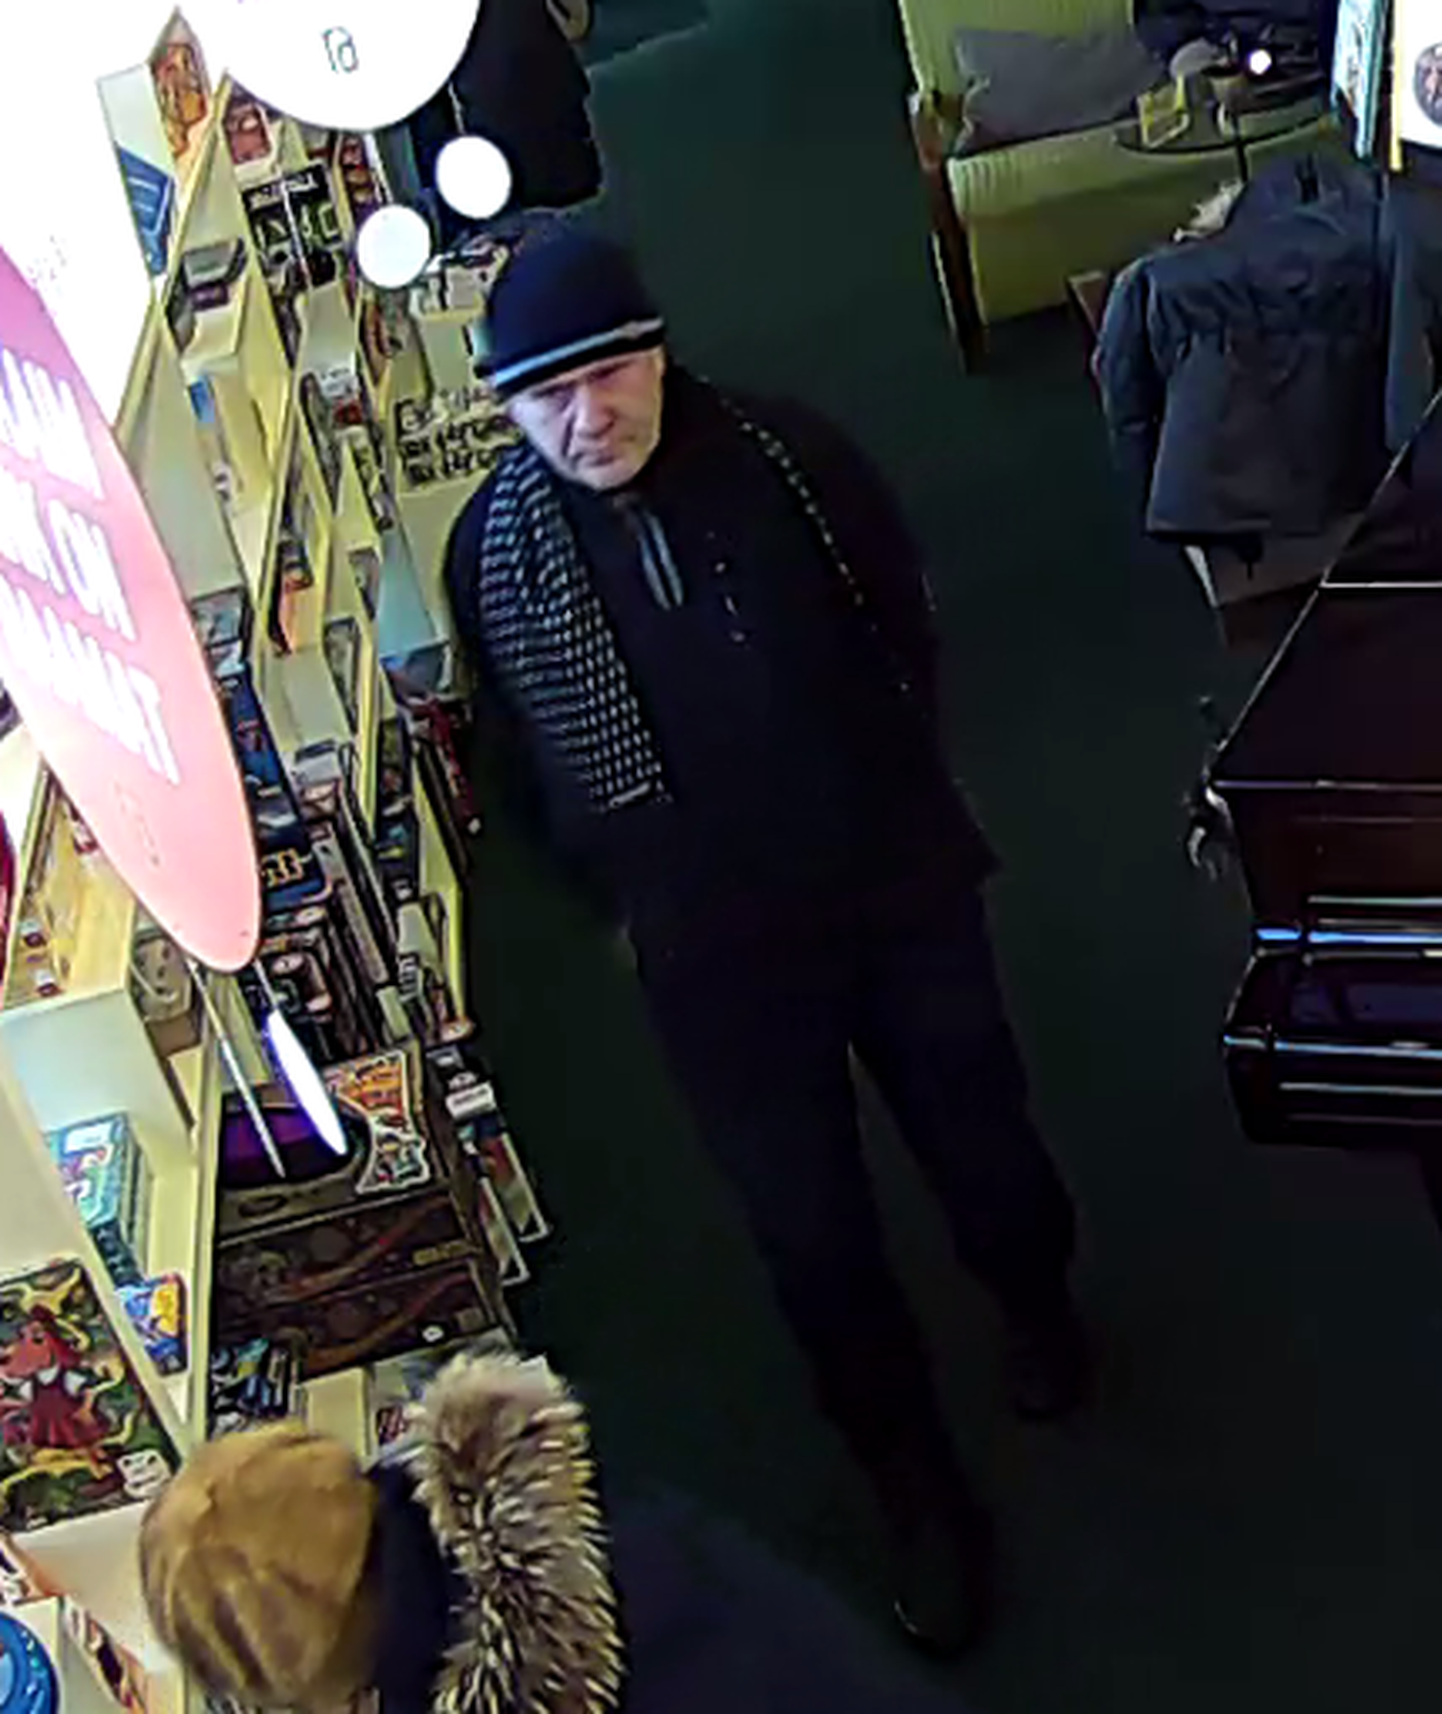 Pildil olevat meest on alust kahtlustada 6. jaanuaril Pärnus Hommiku tänaval kohvikust toime pandud sularaha varguses.